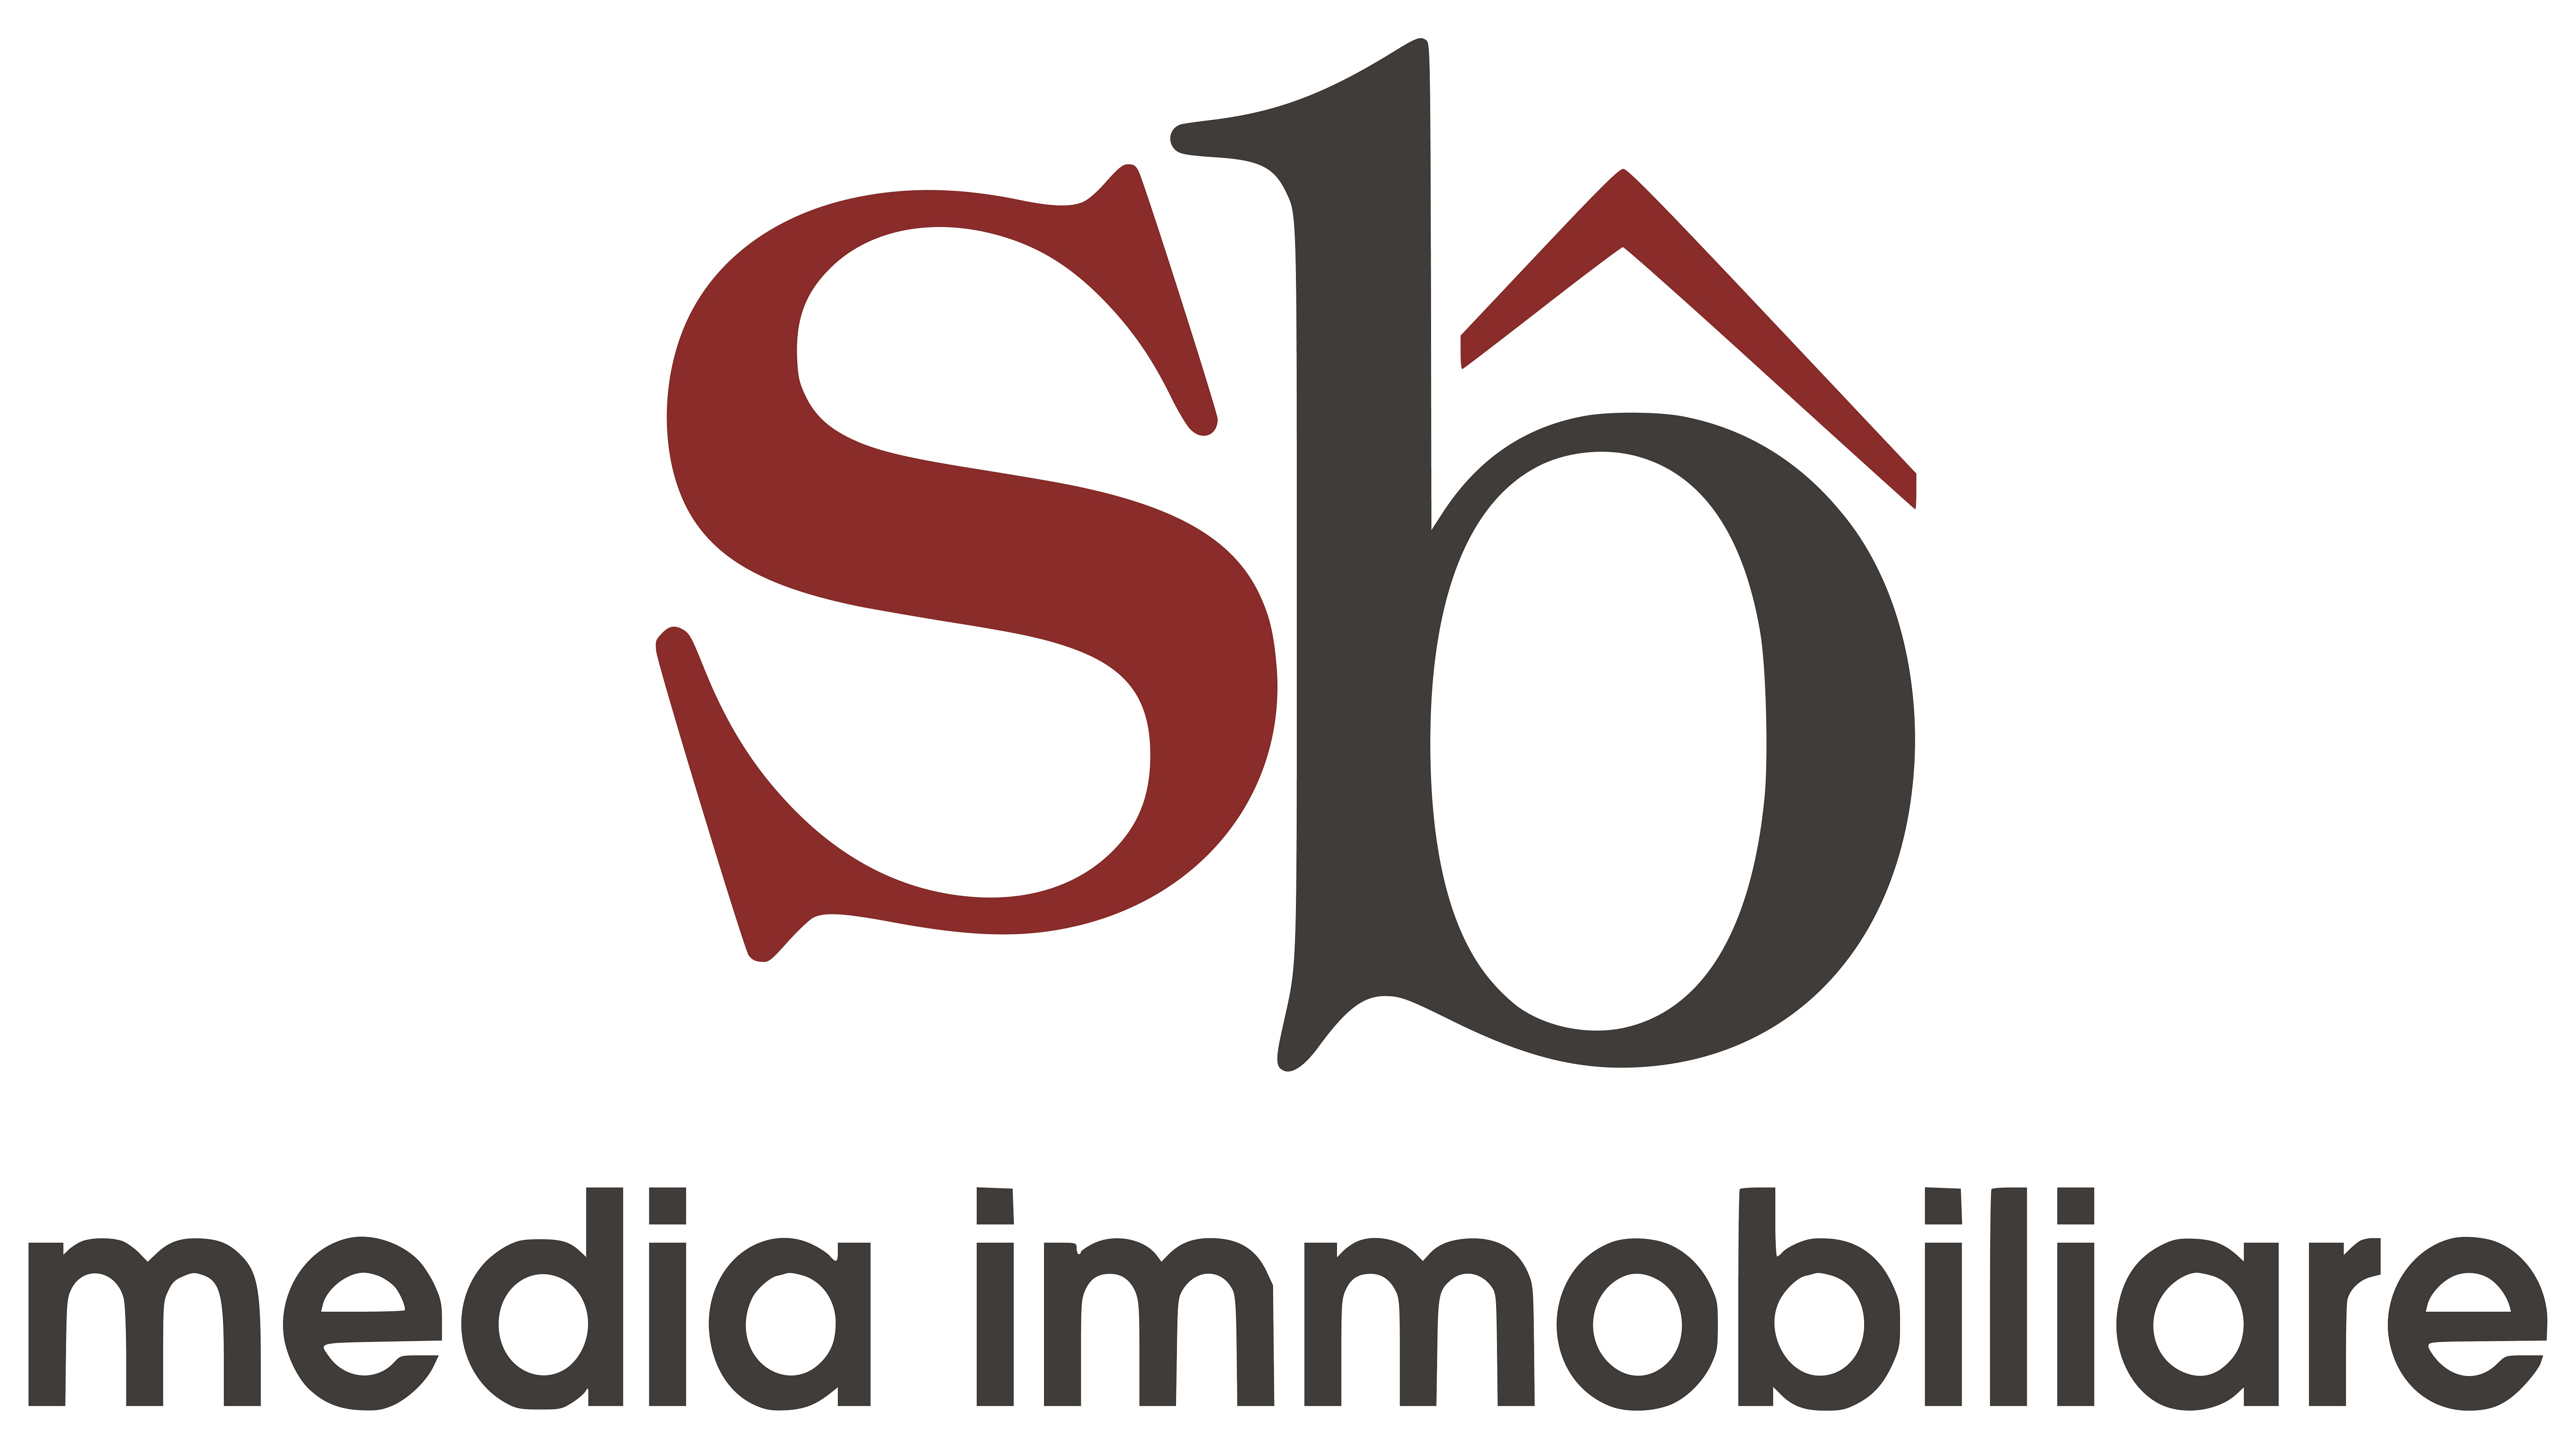 SB Media Immobiliare